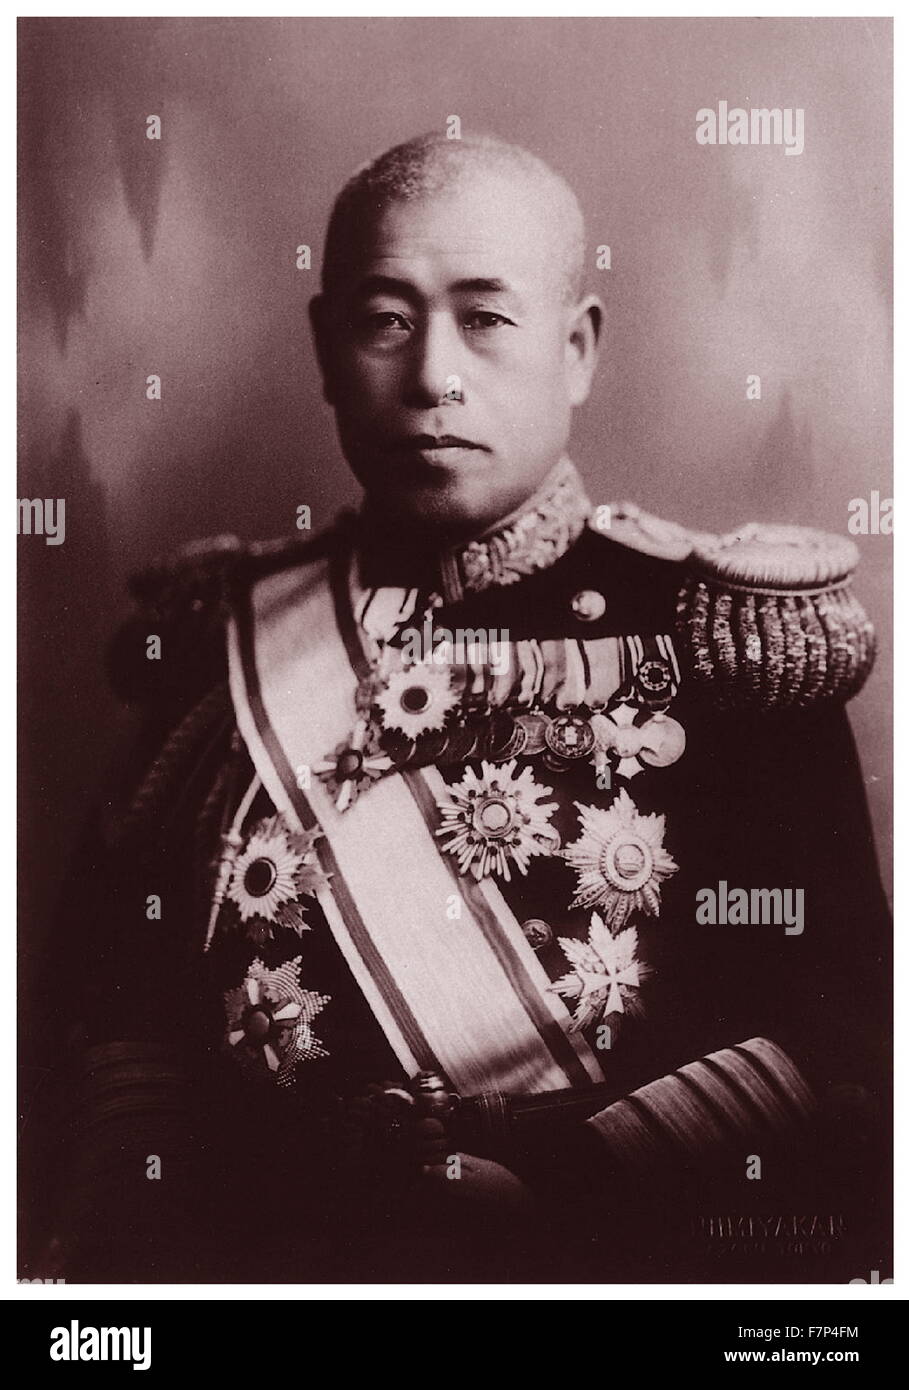 Fotografieren von japanischen Marschall Admiral Isoroku Yamamoto (1884-1943) und der Oberbefehlshaber der kombinierten Flotte während des zweiten Weltkriegs. Vom 1942 Stockfoto